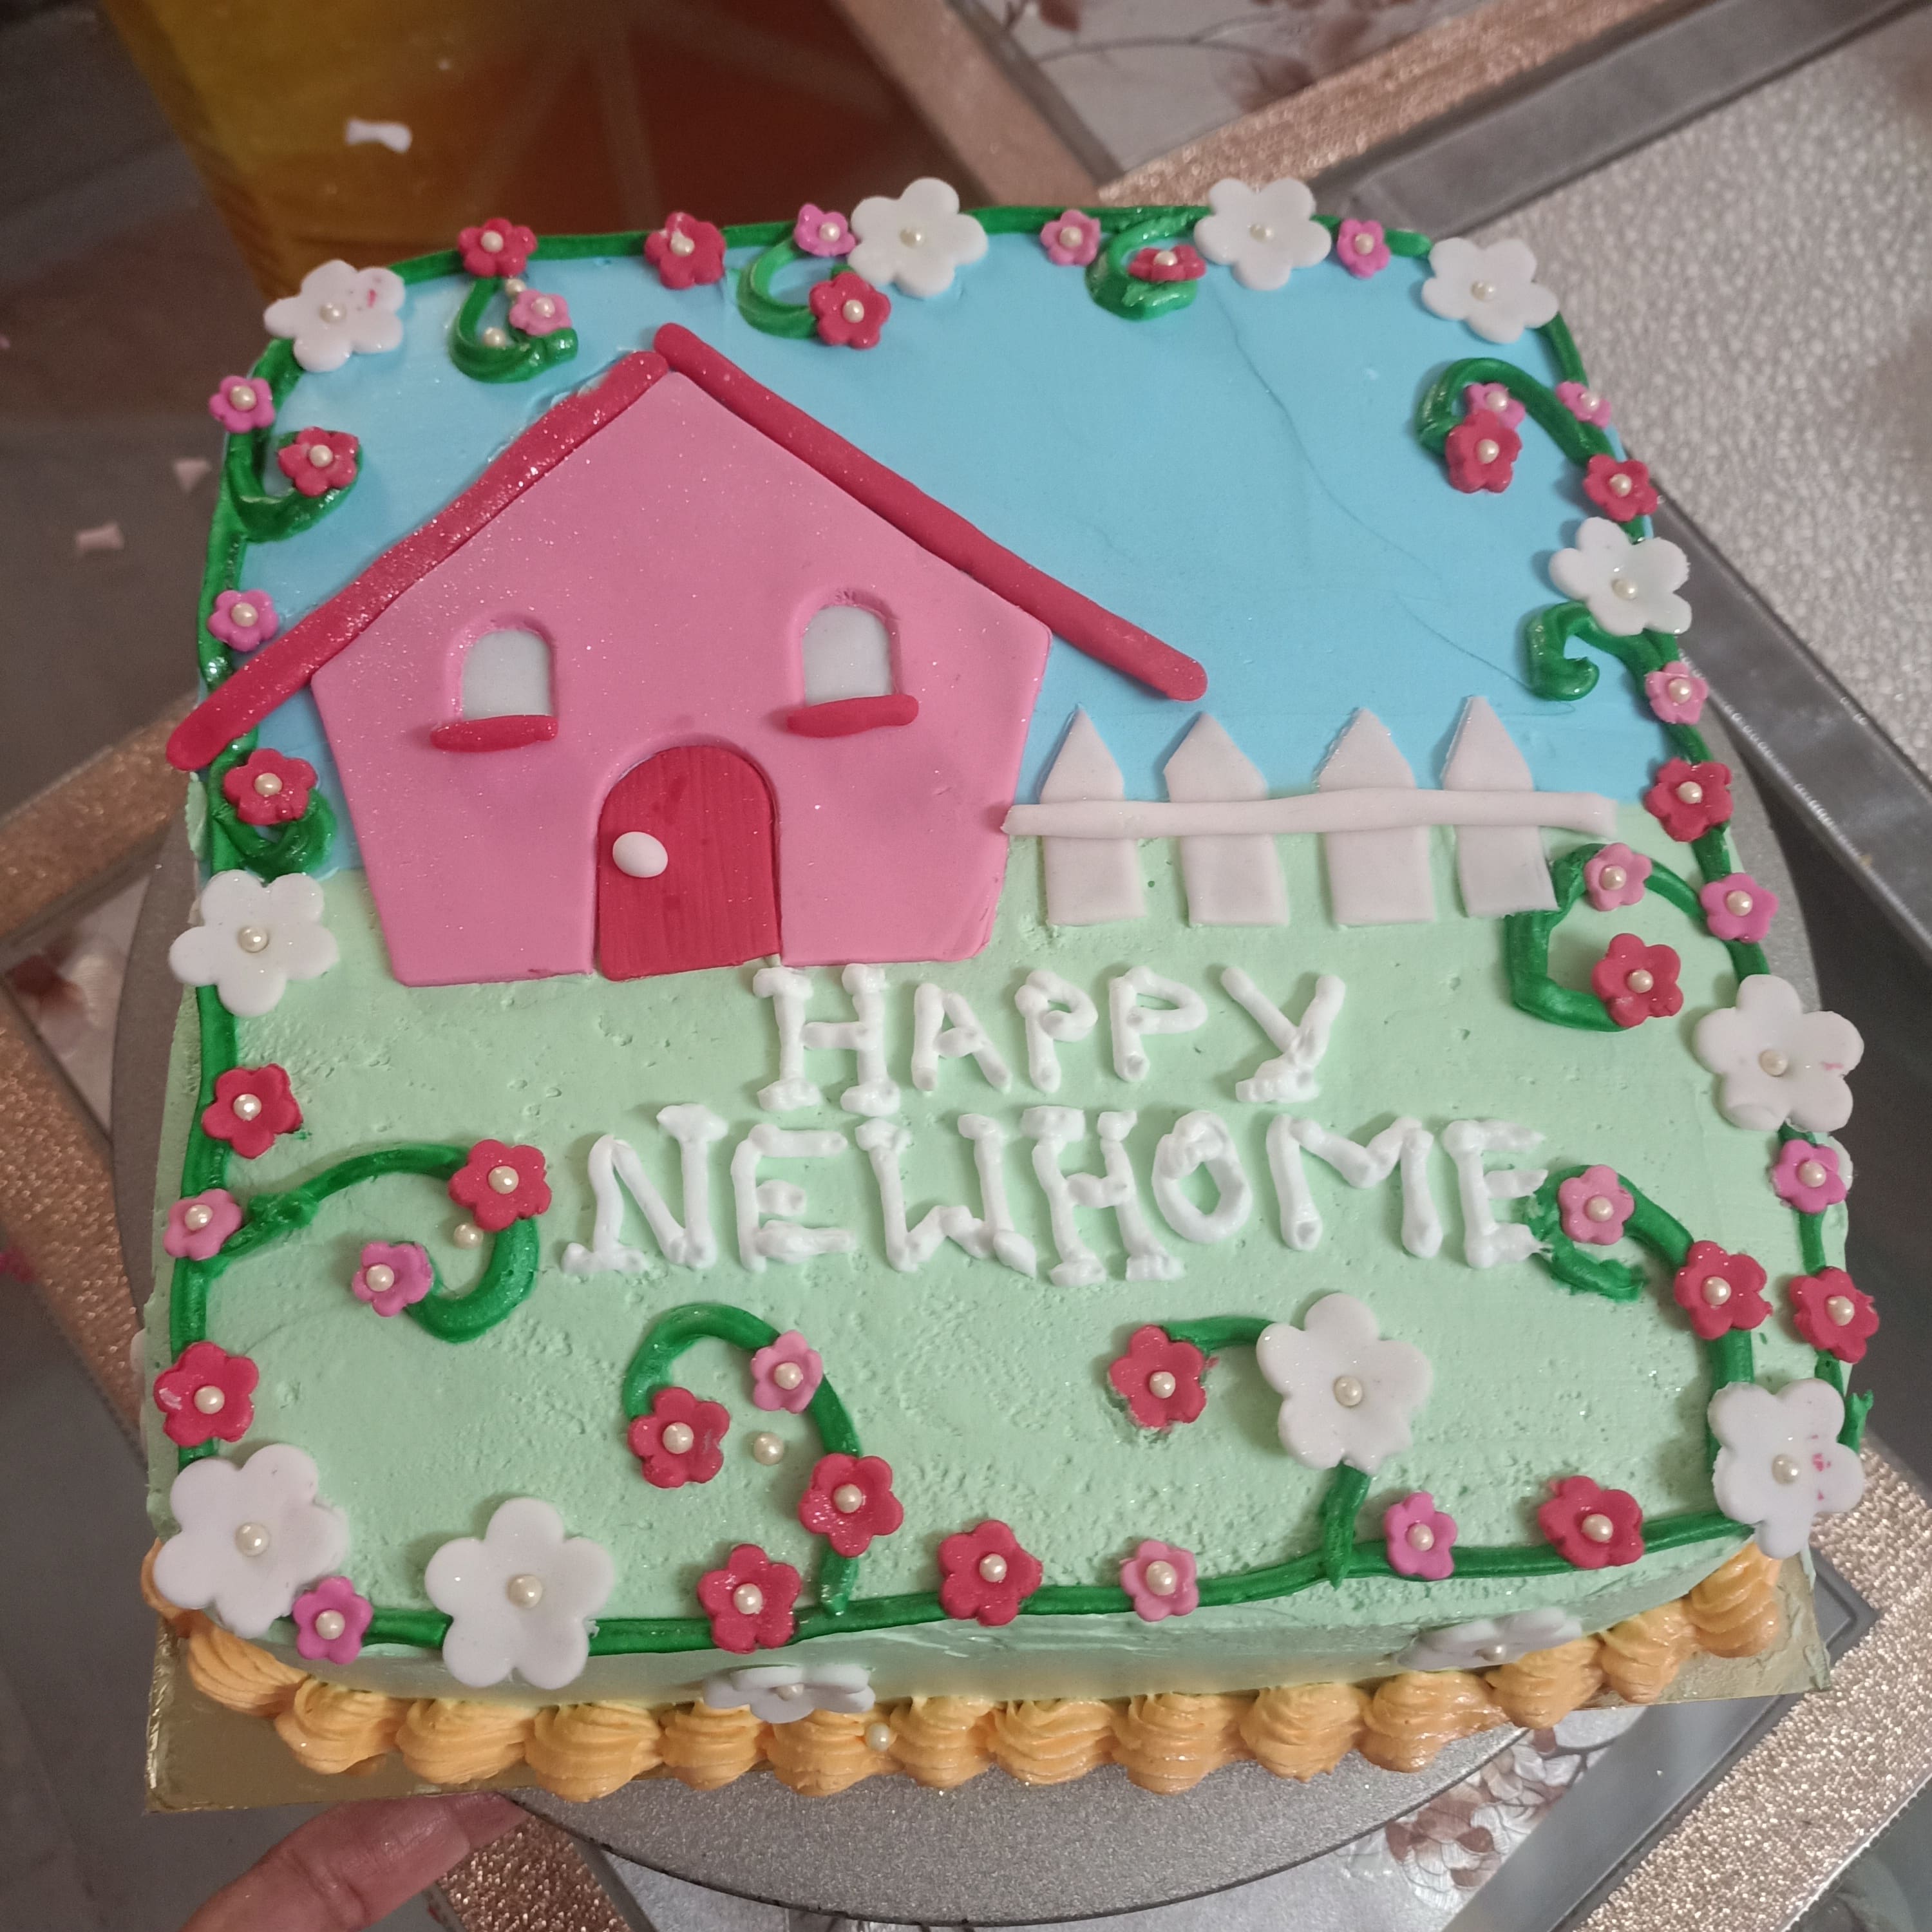 Housewarming Theme Cake at Best Price | YummyCake